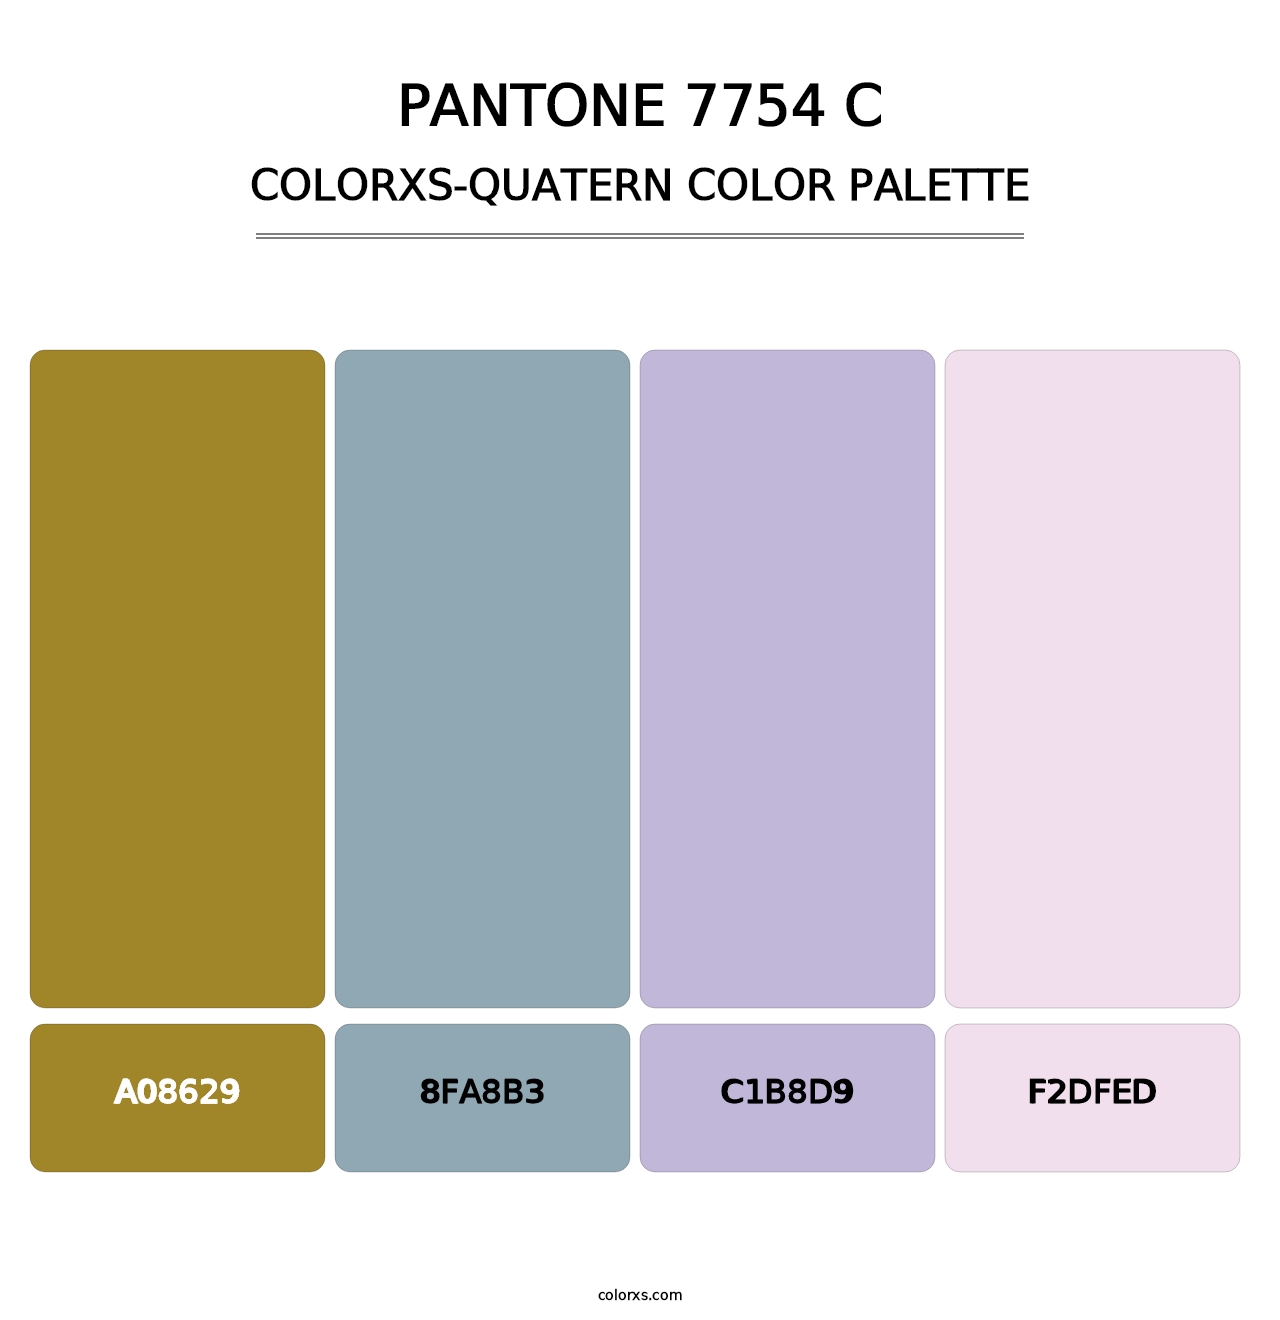 PANTONE 7754 C - Colorxs Quatern Palette